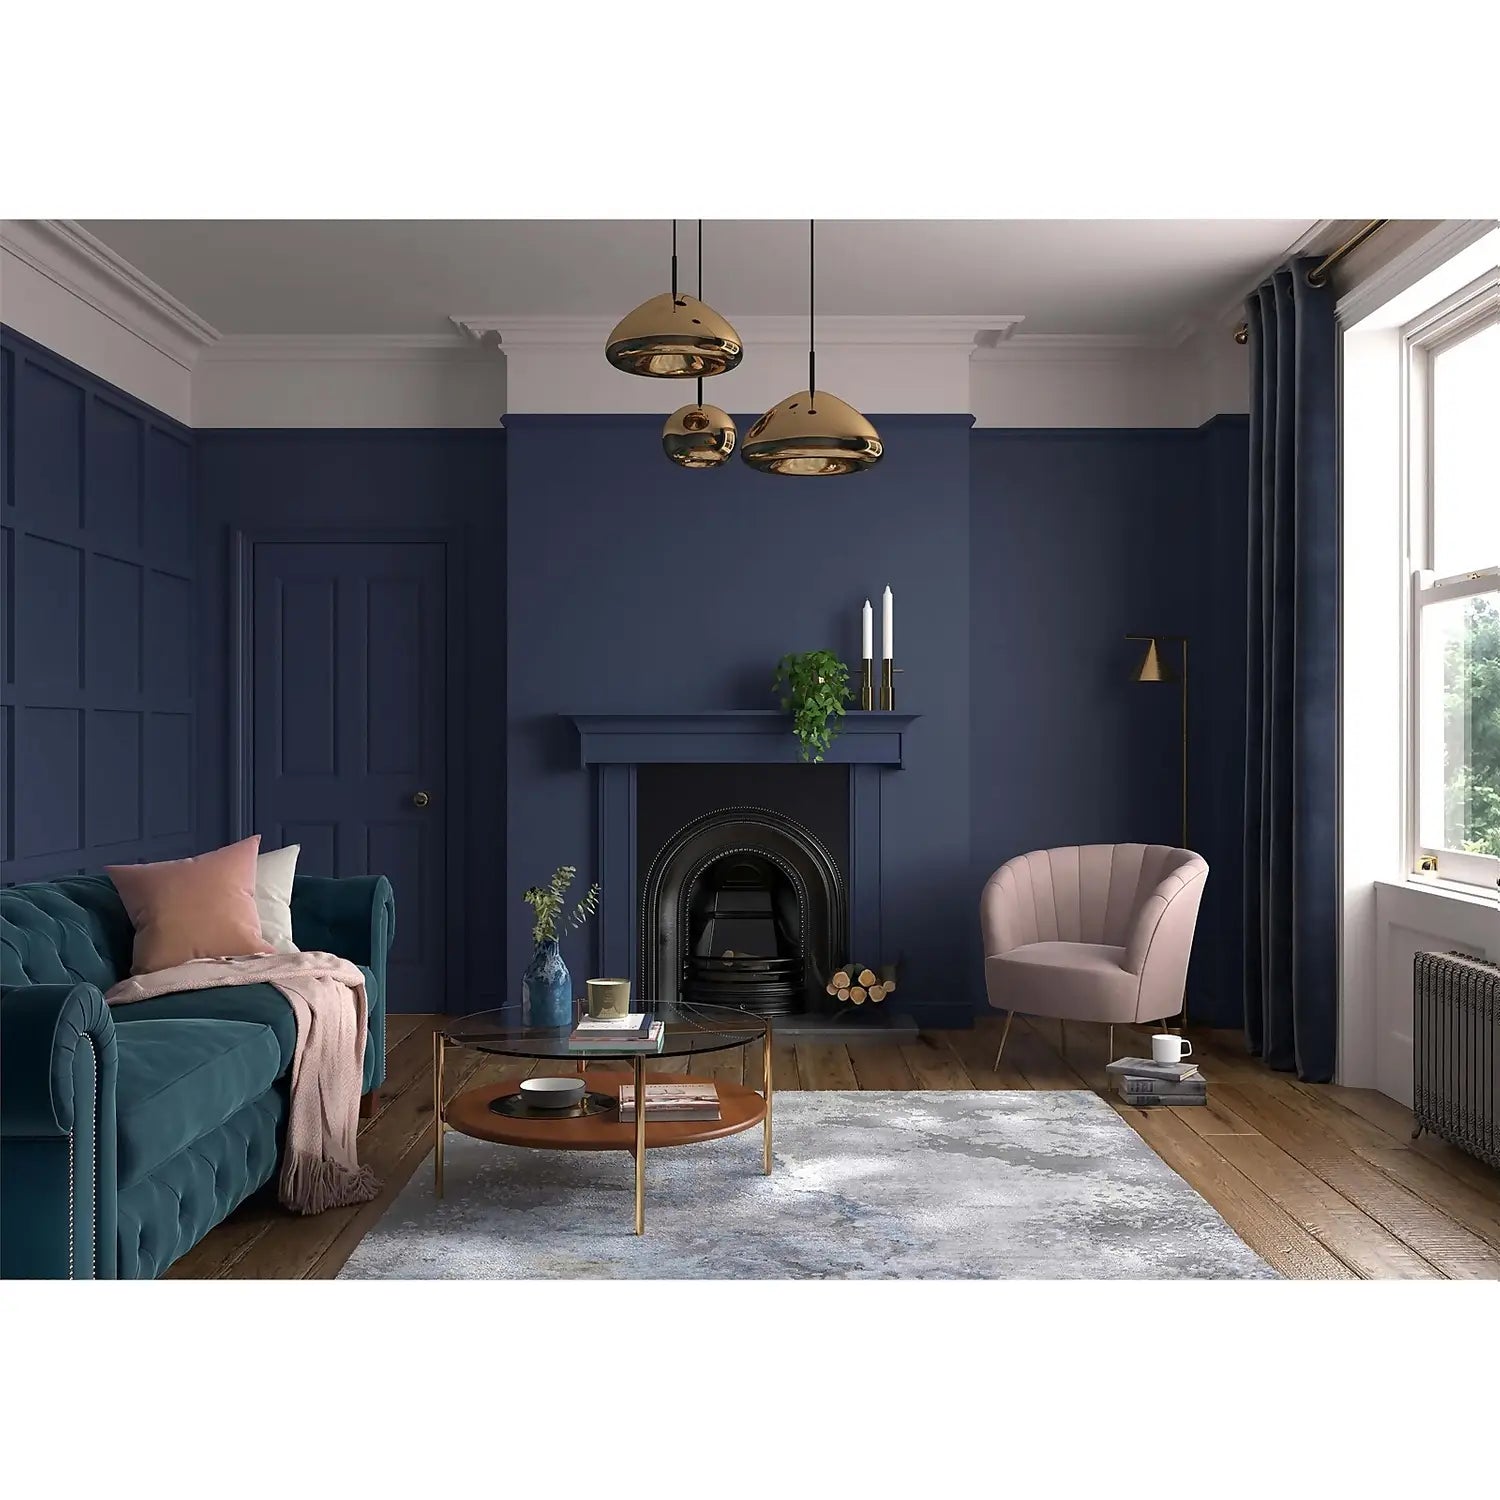 DH Oxford Blue - Dulux Heritage Paint Colour - Paint Online Ireland